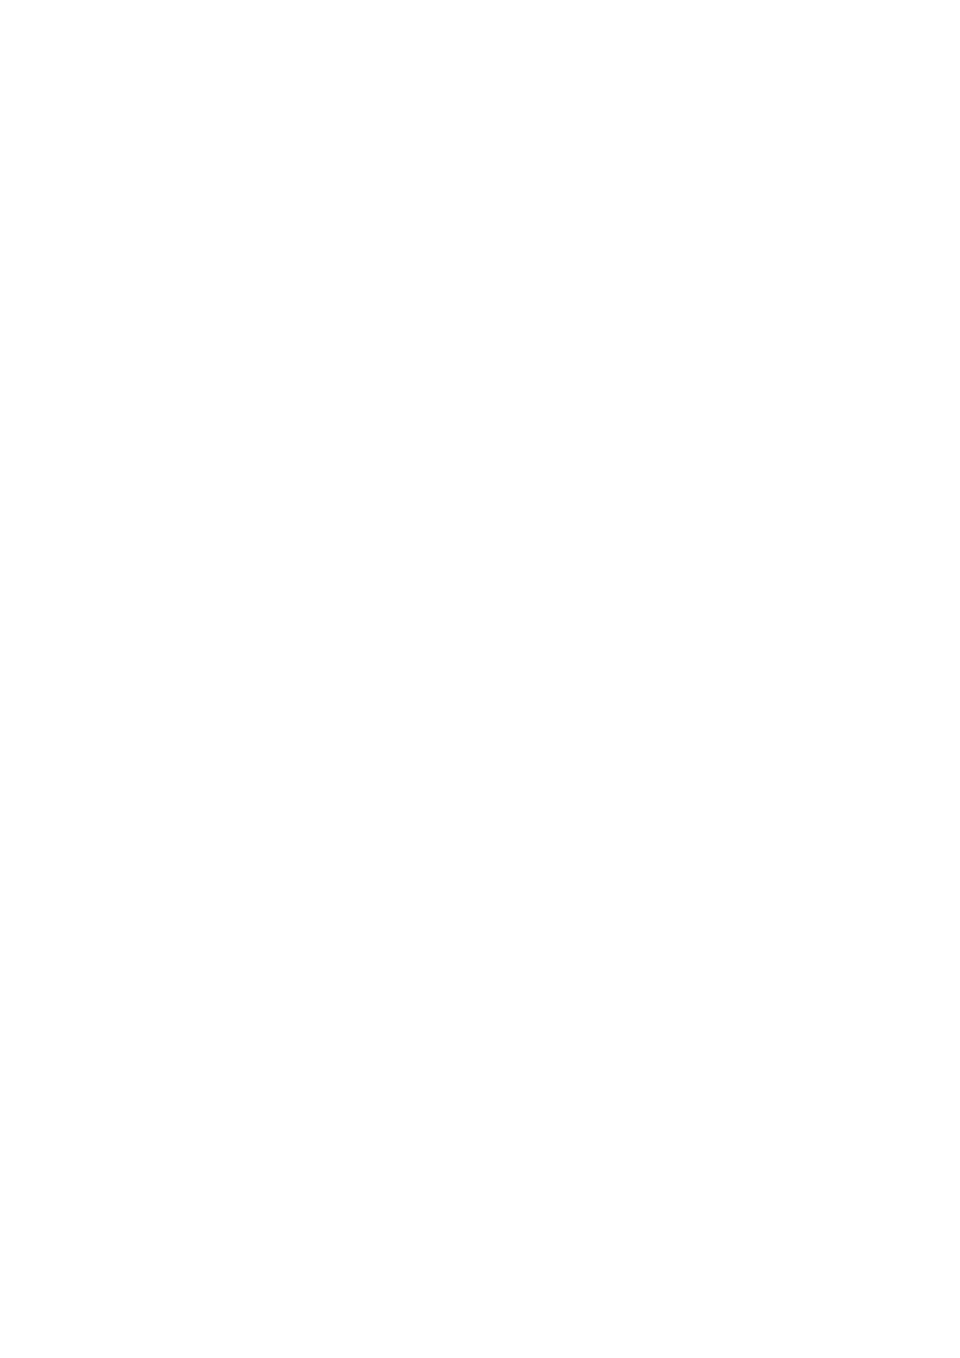 działalności Gminy Milanówek, w tym wynikających z działalności Zakładu Gospodarki Komunalnej i Mieszkaniowej w Milanówku W/272/46/ORG/52/16 22-01-2016 INTER RISK TOWARZYSTWO UBEZPIECZEŃ SA VIENNA